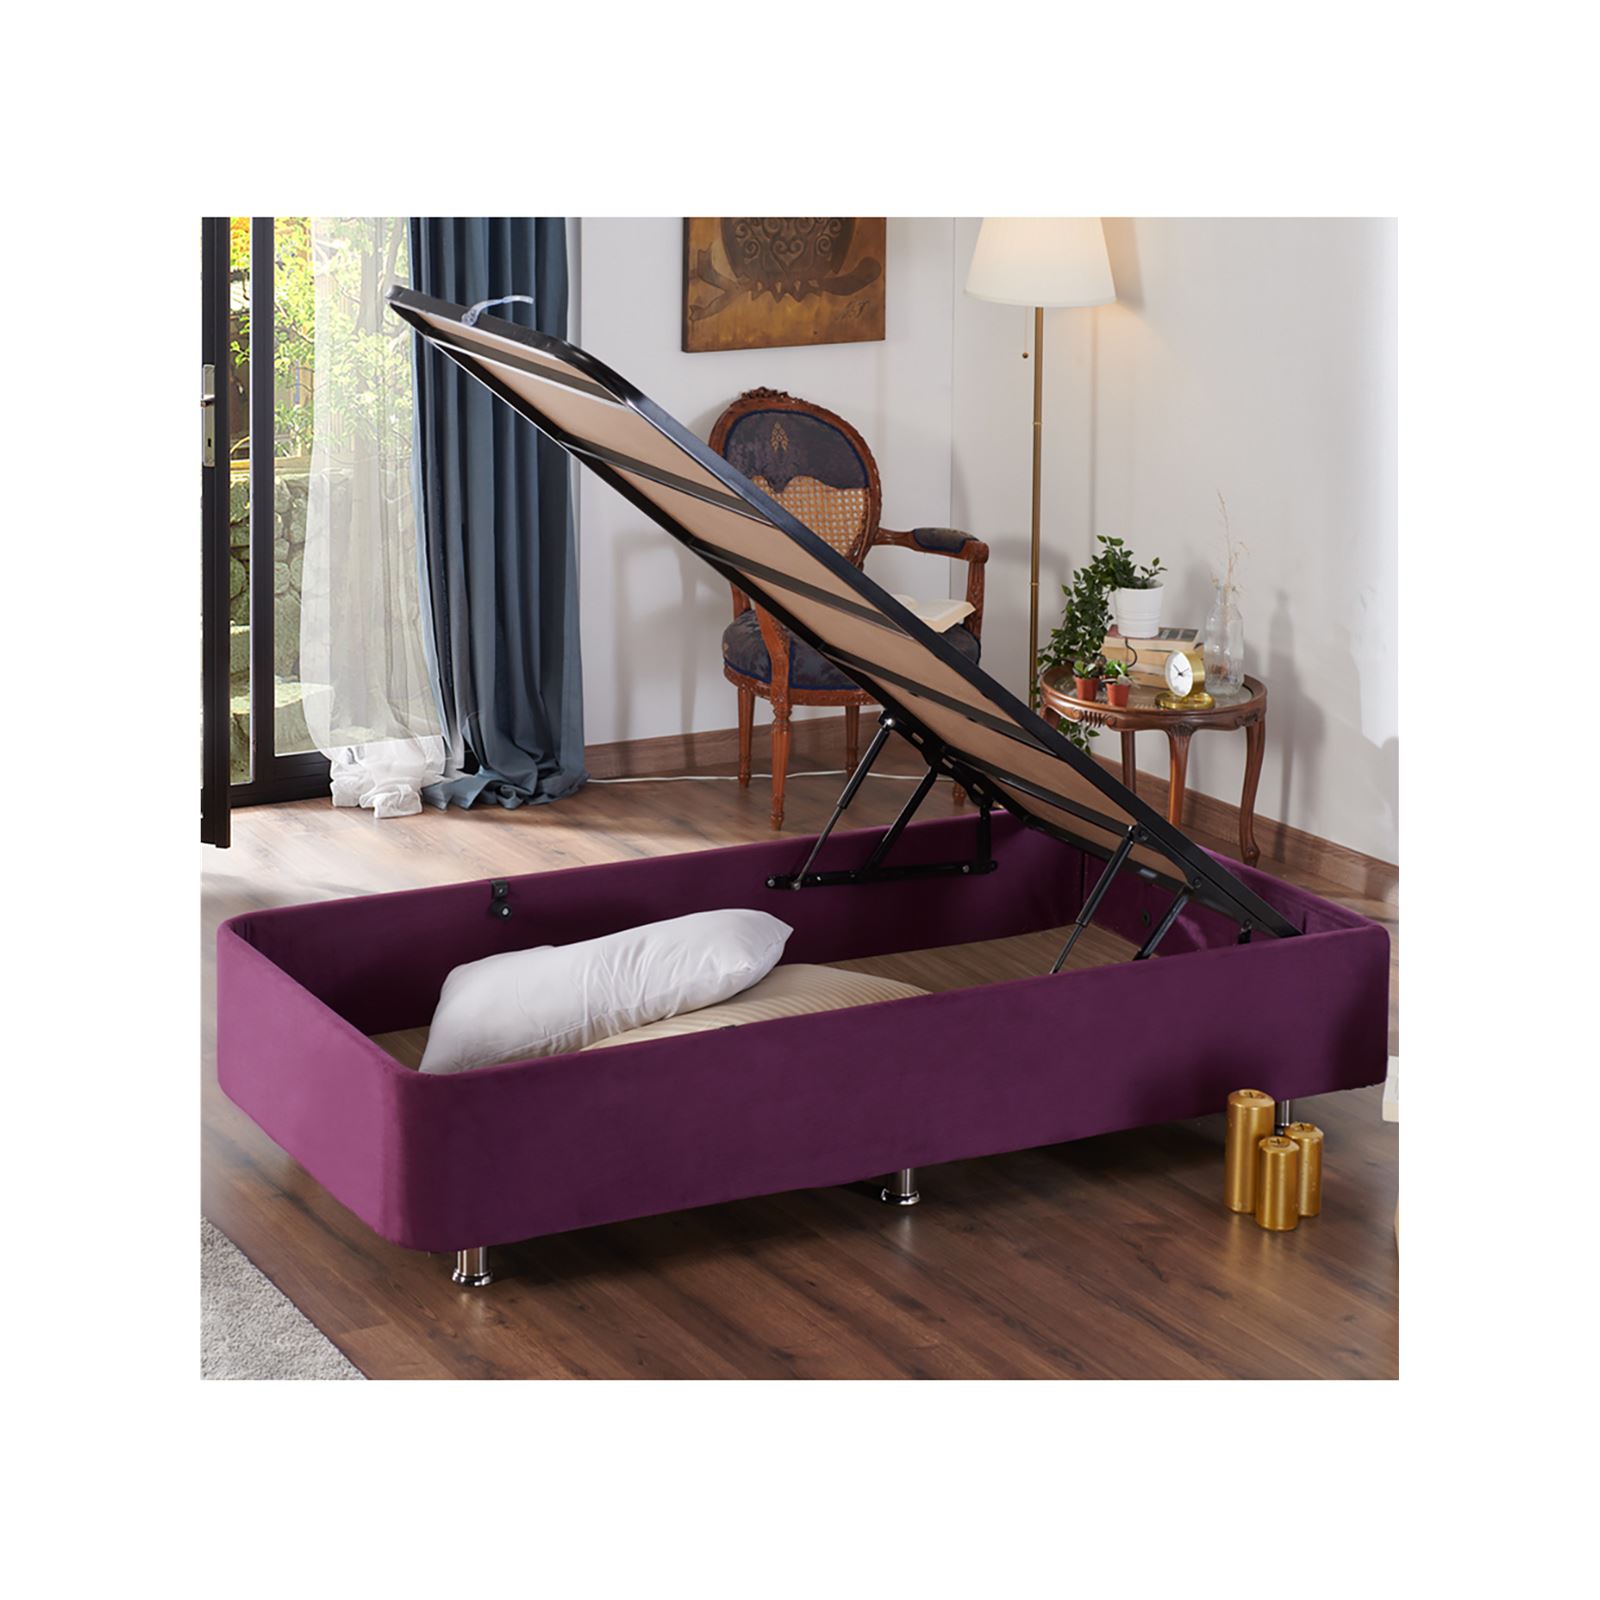 Niron Violet Yatak Seti 100x200 cm Tek Kişilik Yatak Baza Başlık Takımı Orta Sert Yatak Baza ve Başlığı Mor